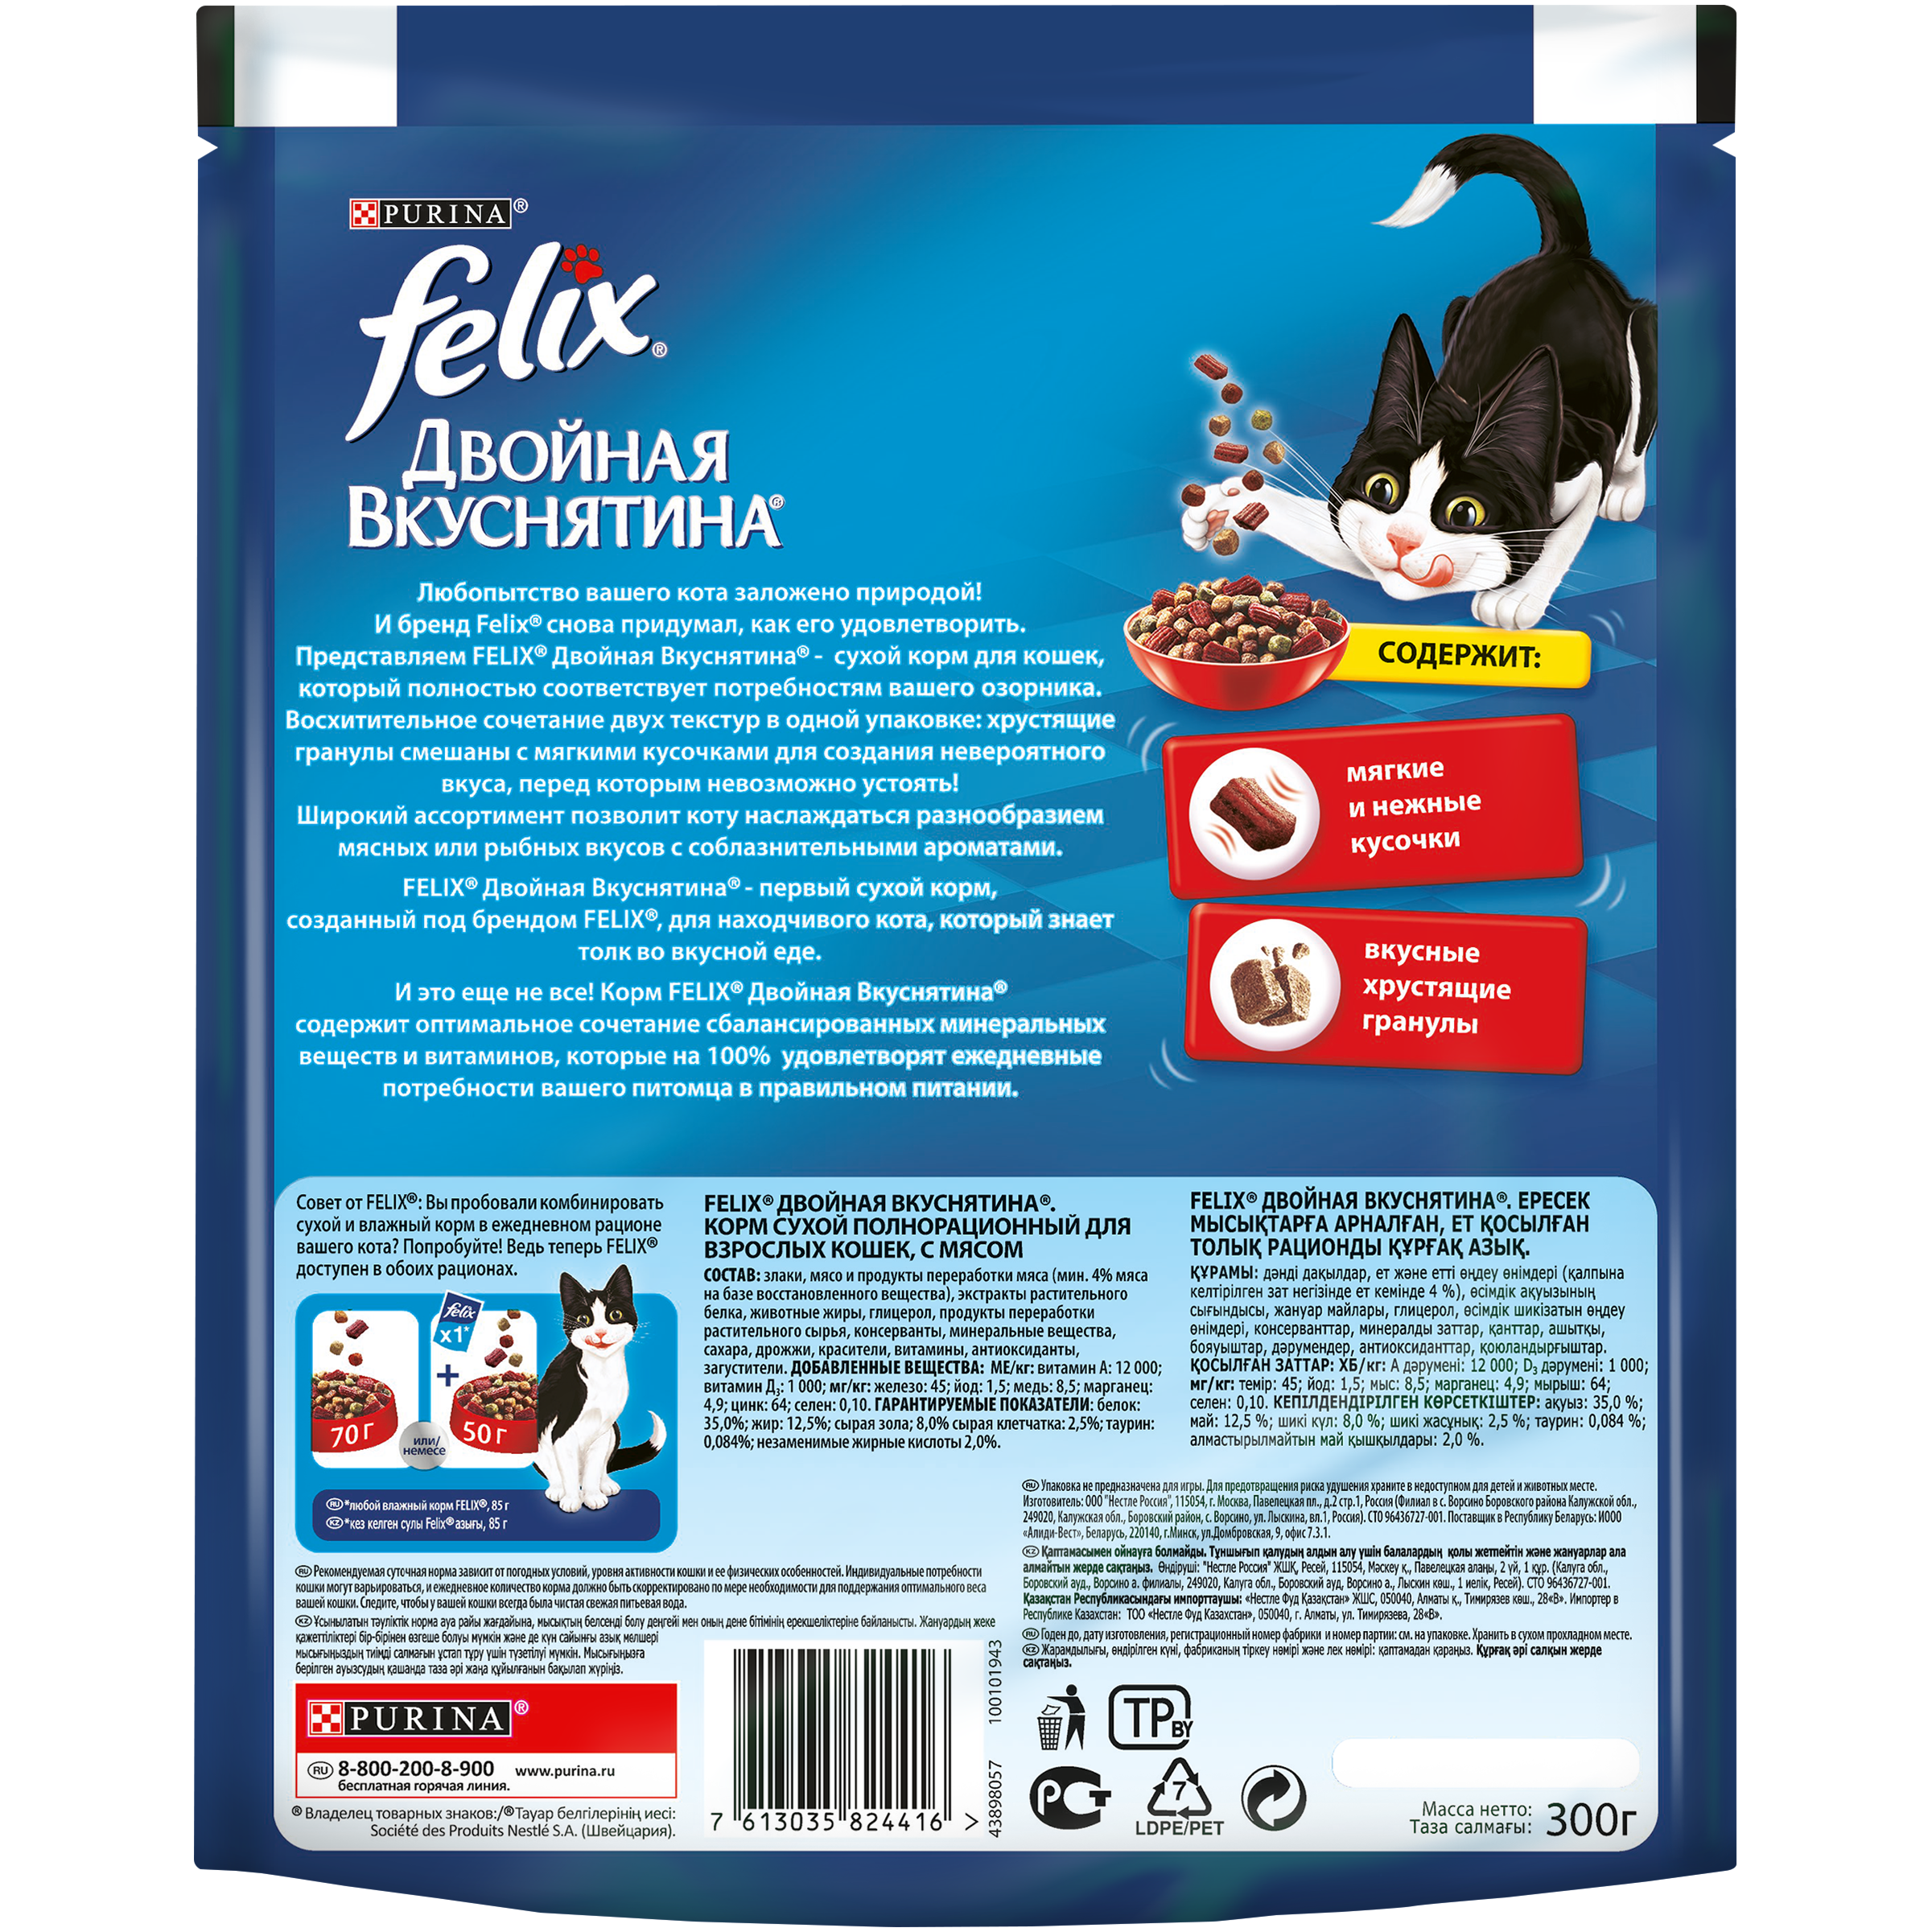 Корм для кошек felix (феликс): отзывы, разбор состава, выводы